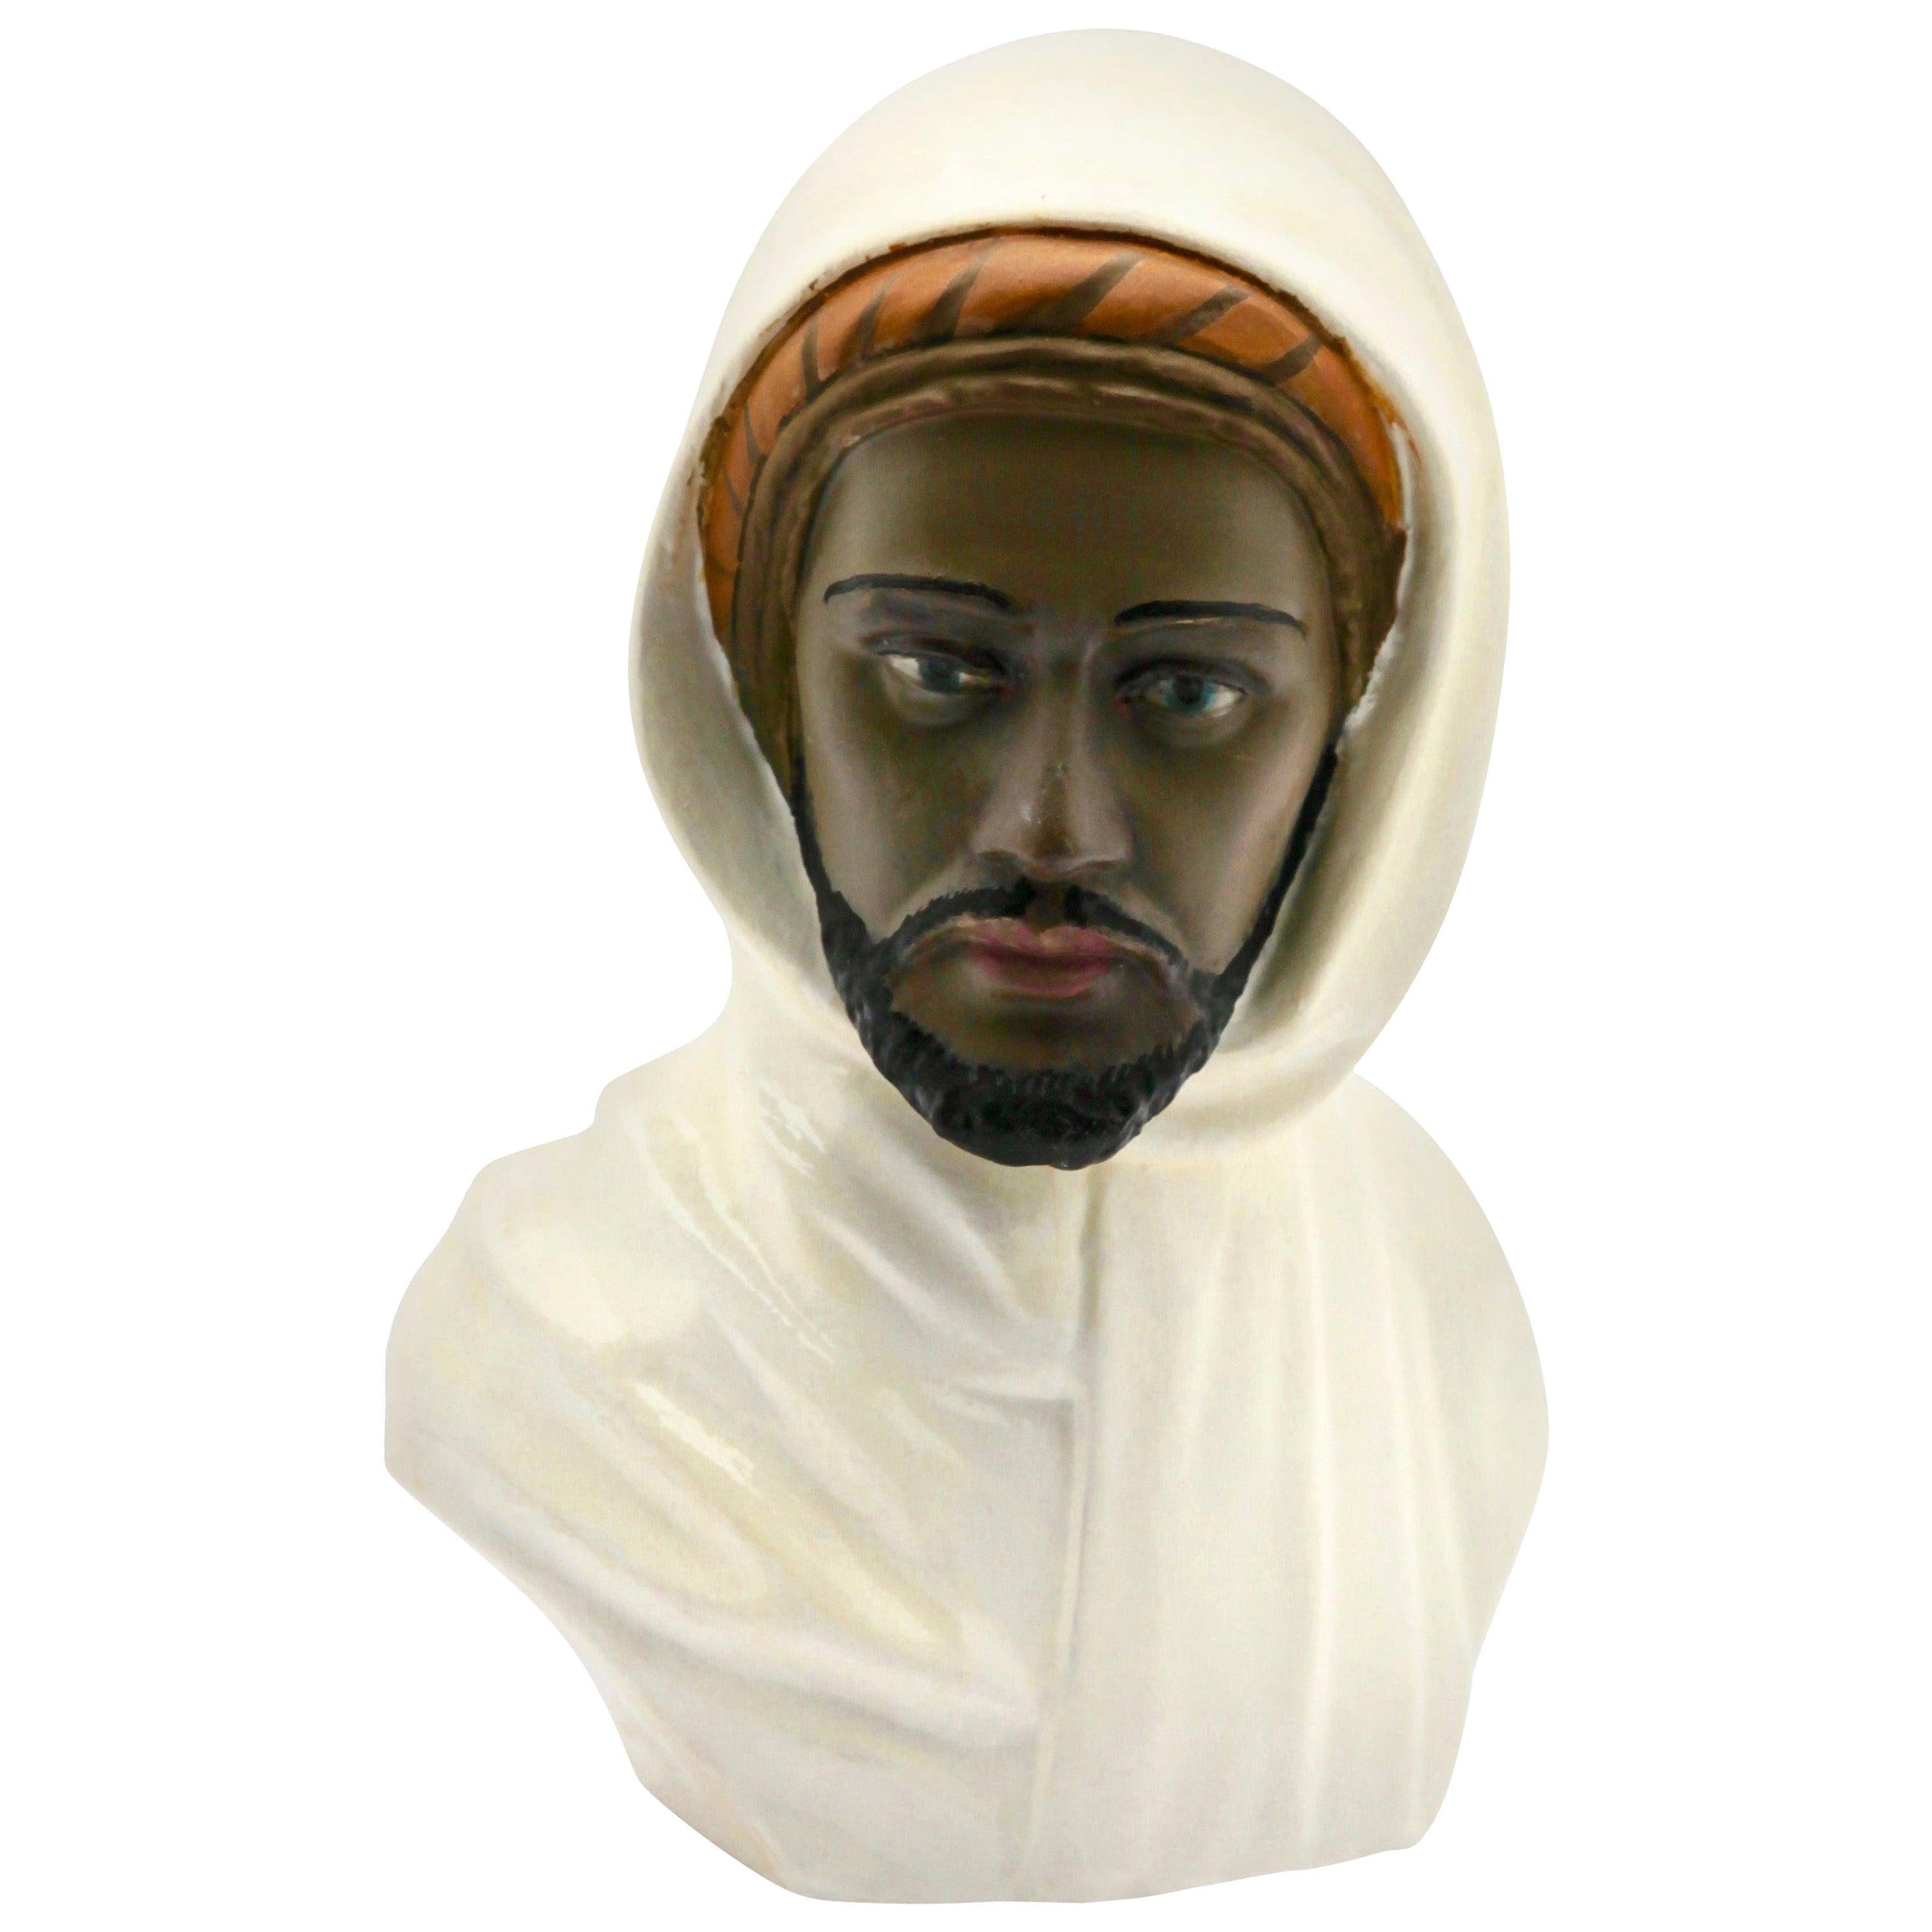 Guiseppe Carli signierte, polychrome Keramikbüste eines arabischen Kopfes